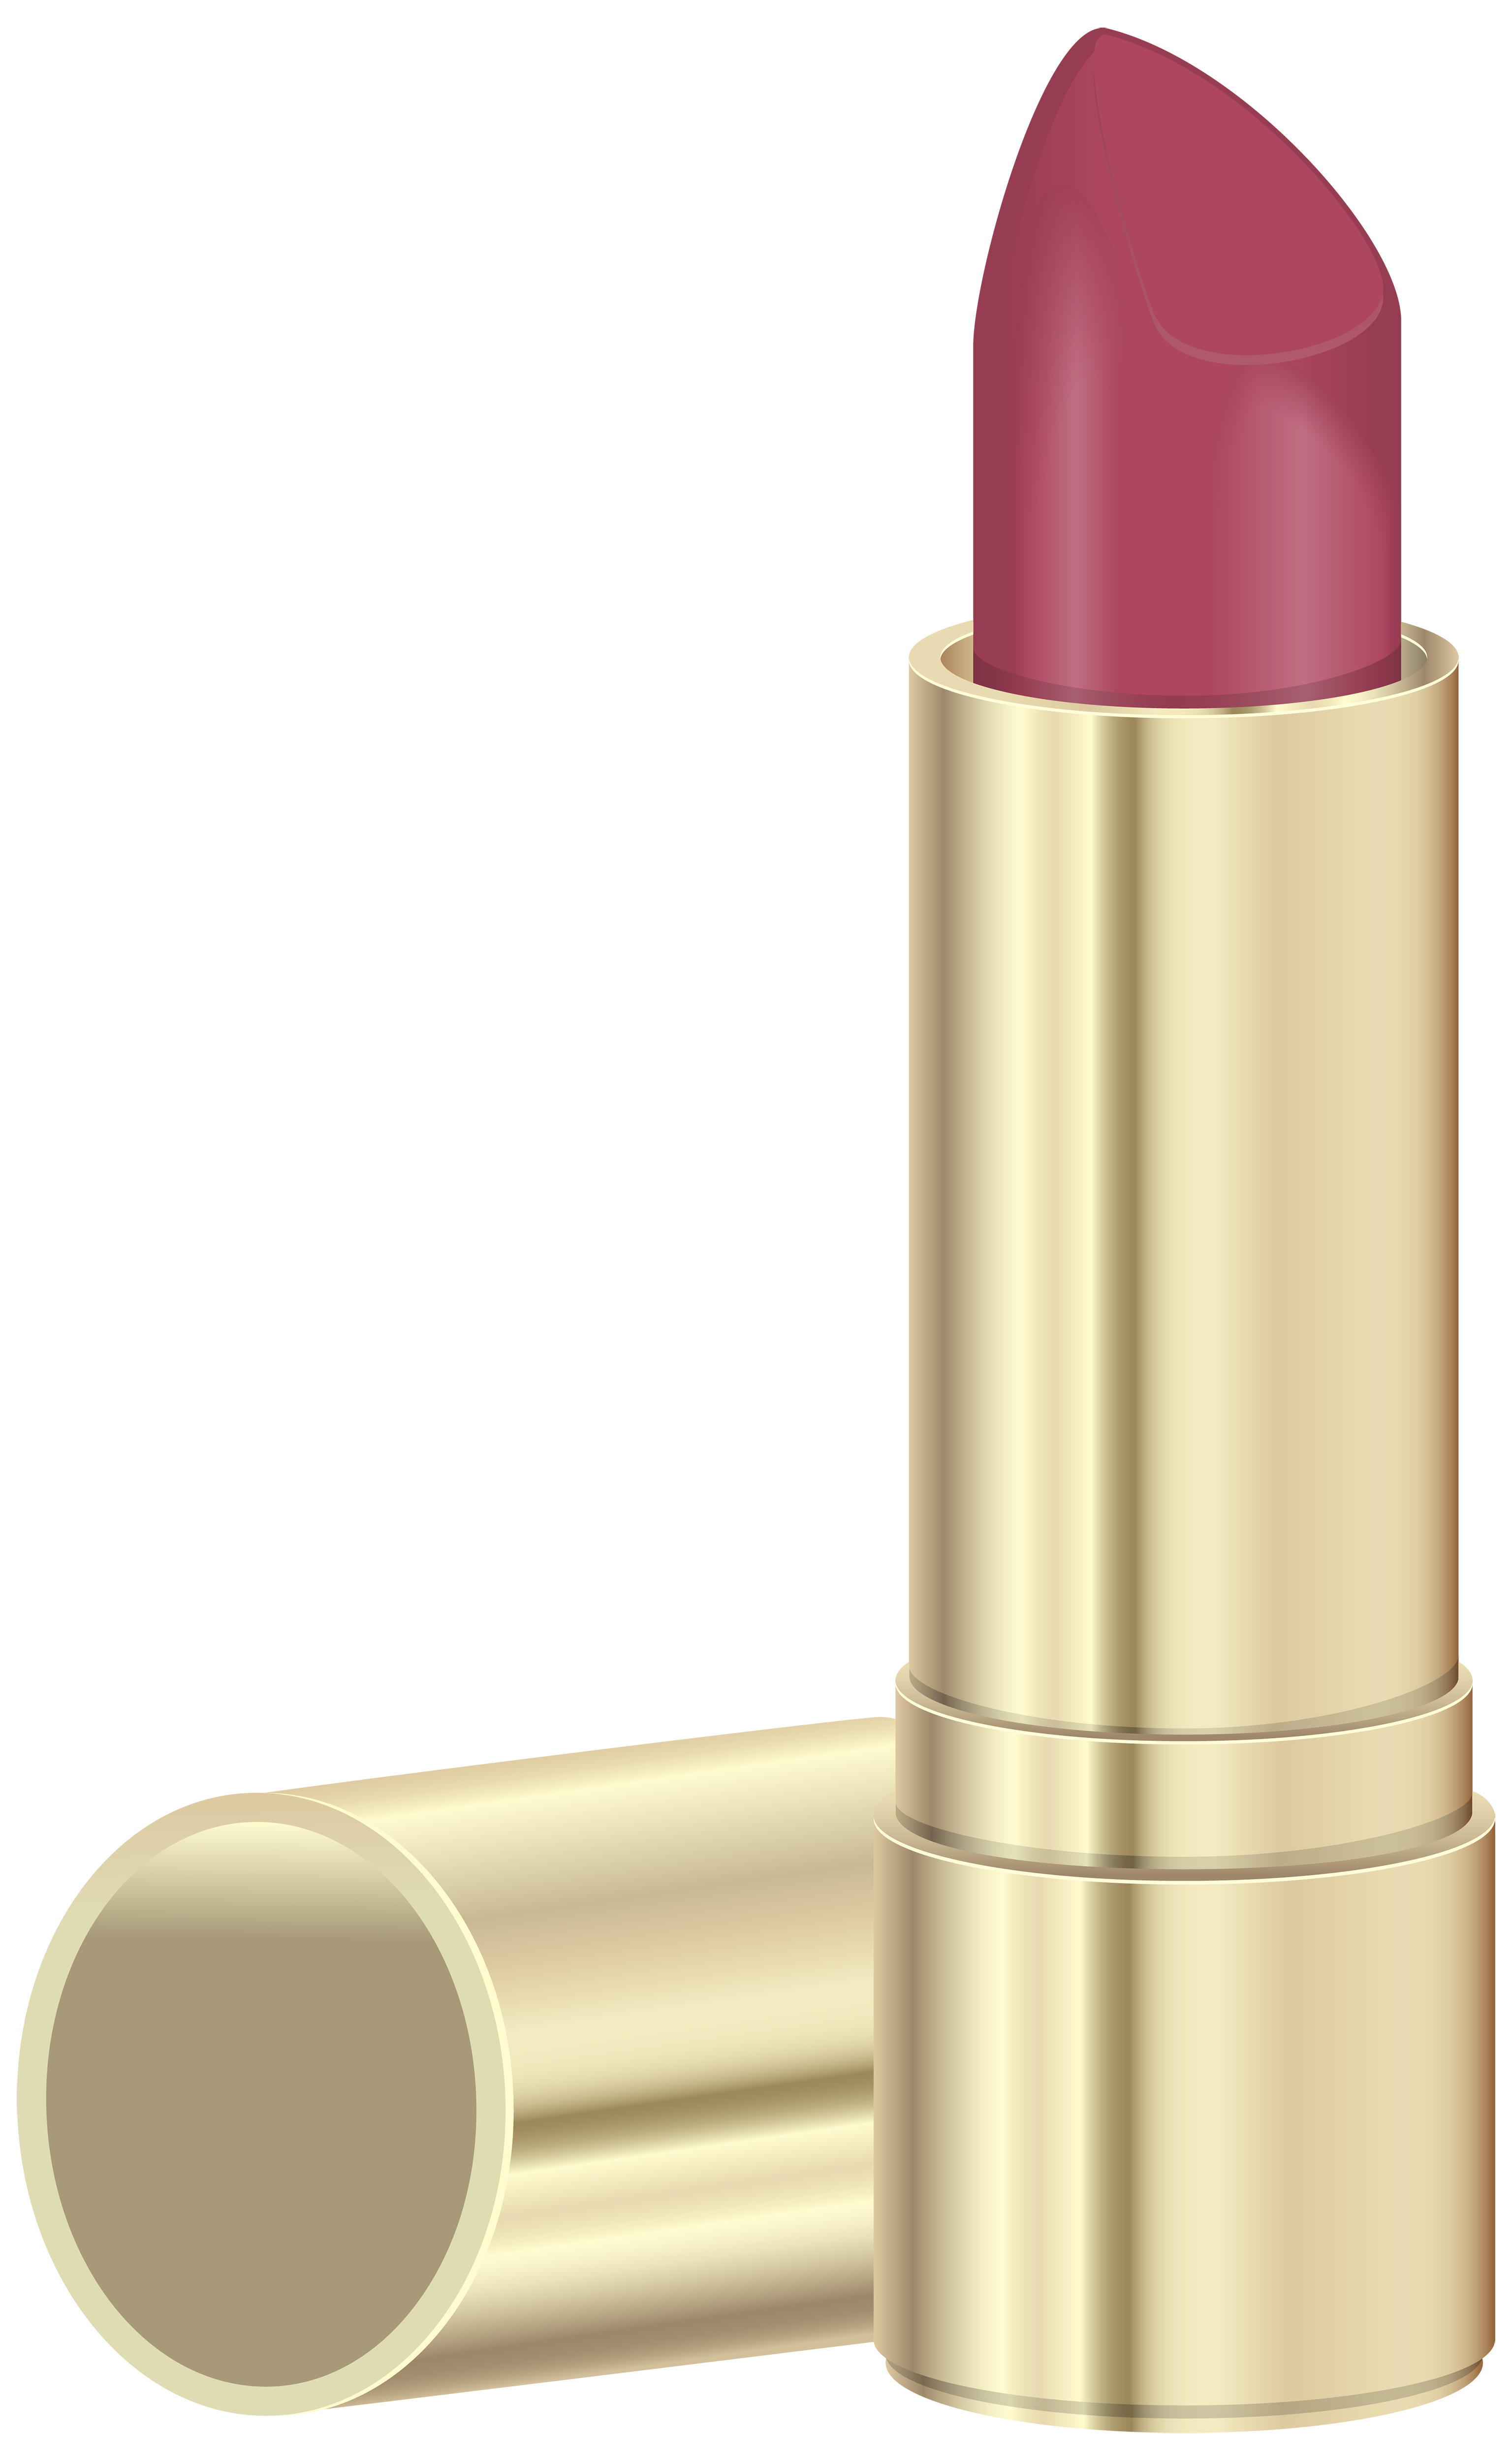 Lipstick clipart image